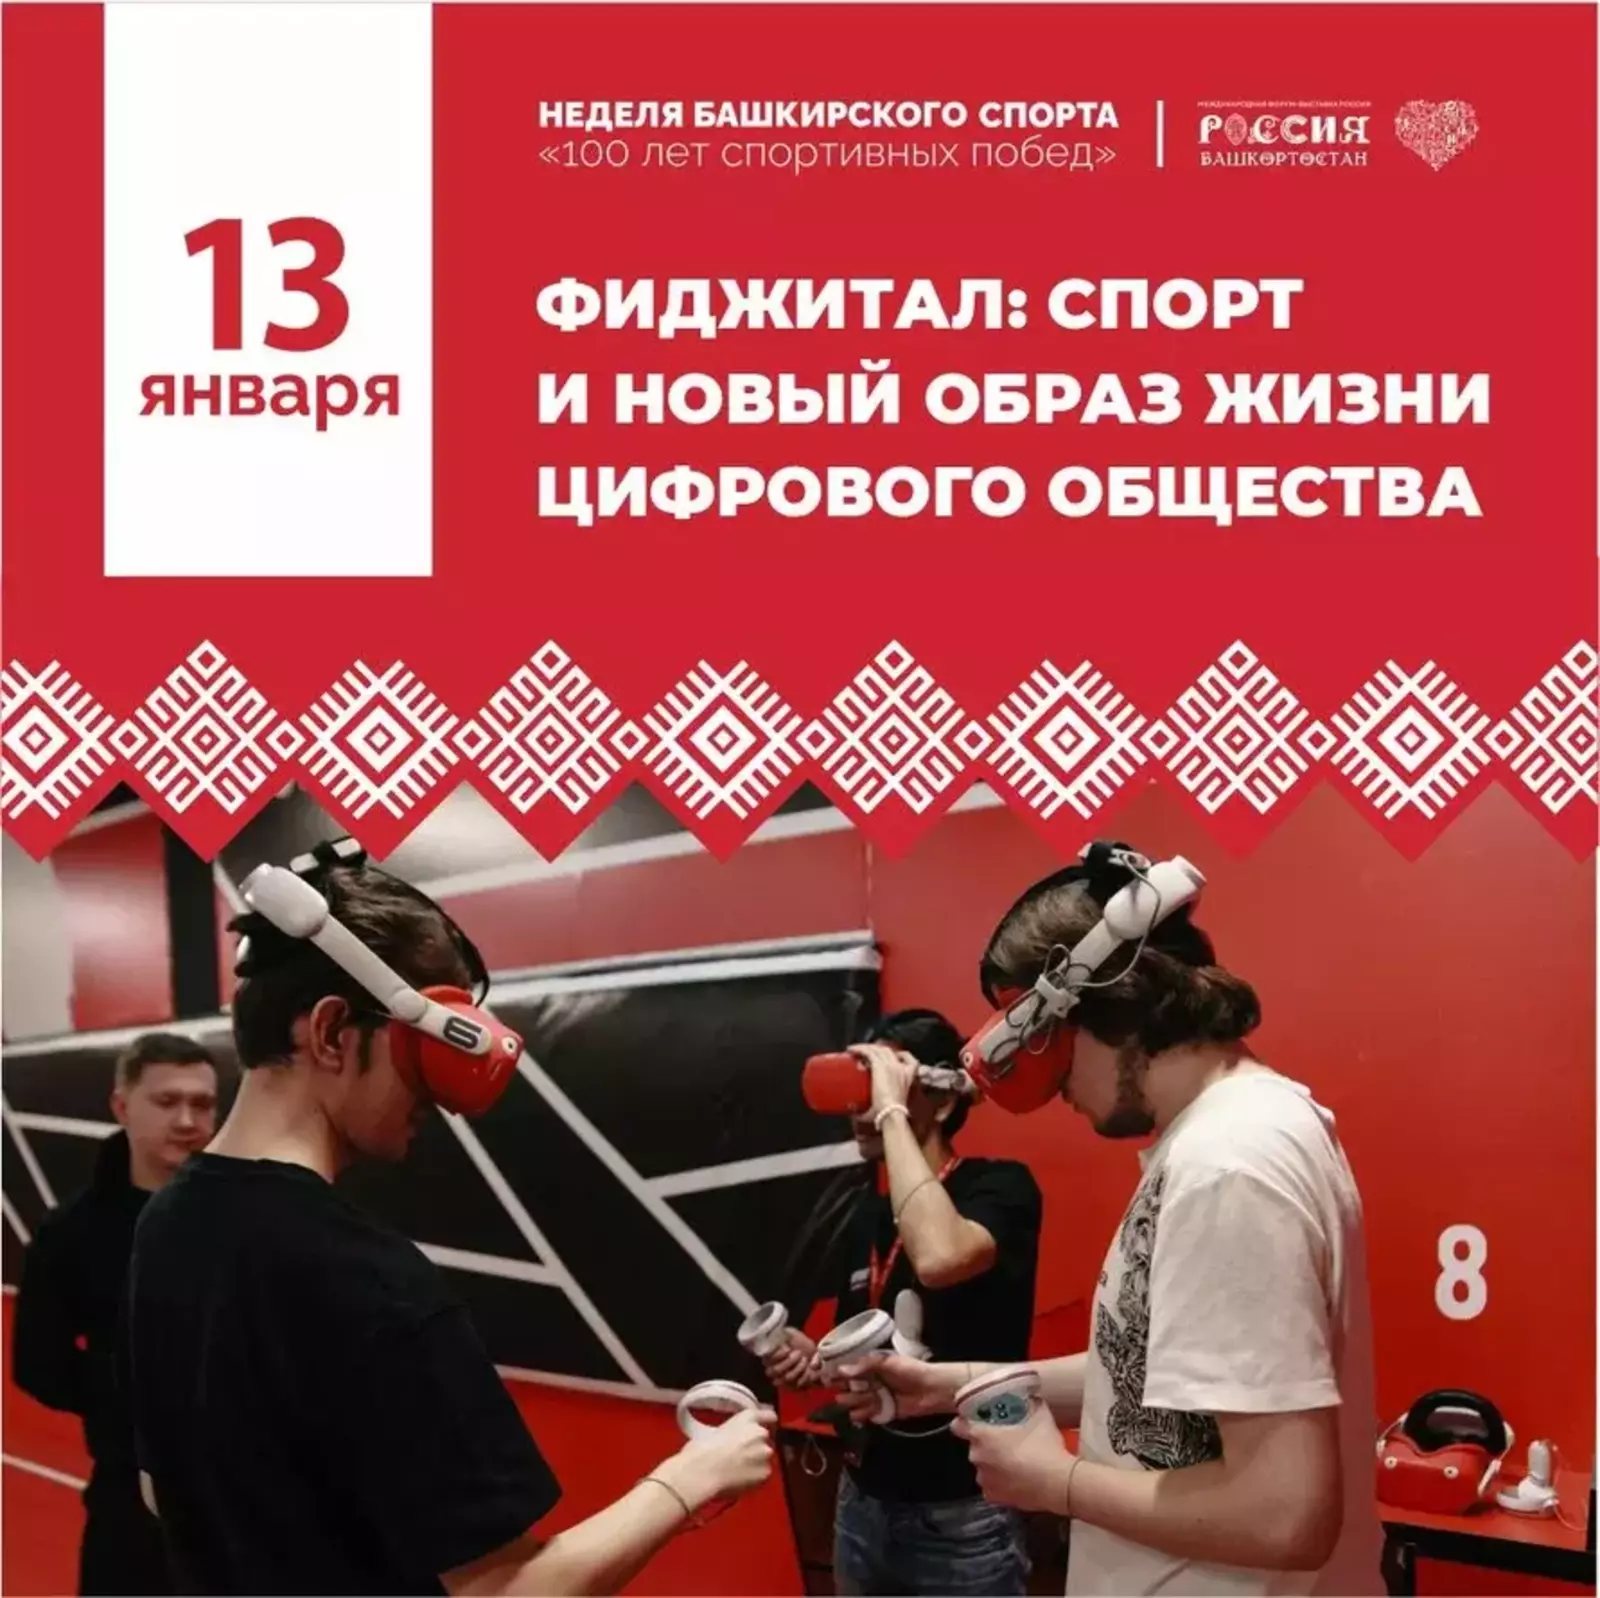 На международной выставке «Россия» стартовала неделя башкирского спорта